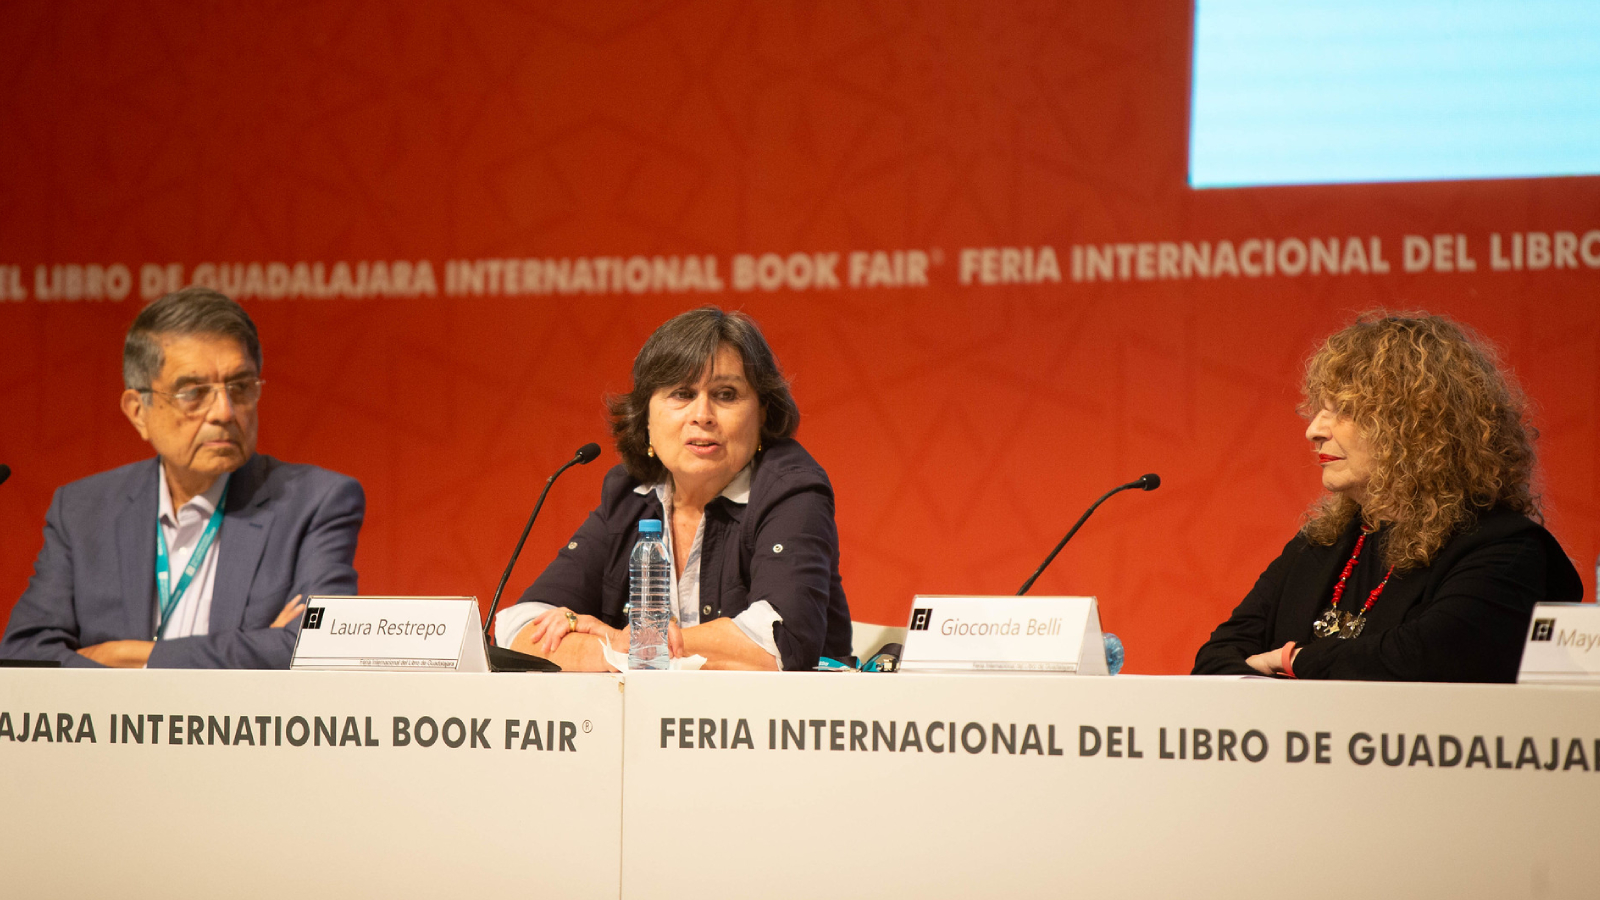 Gioconda Belli, Laura Restrepo y Sergio Ramírez hablan en la FIL sobre cómo es escribir desde el exilio